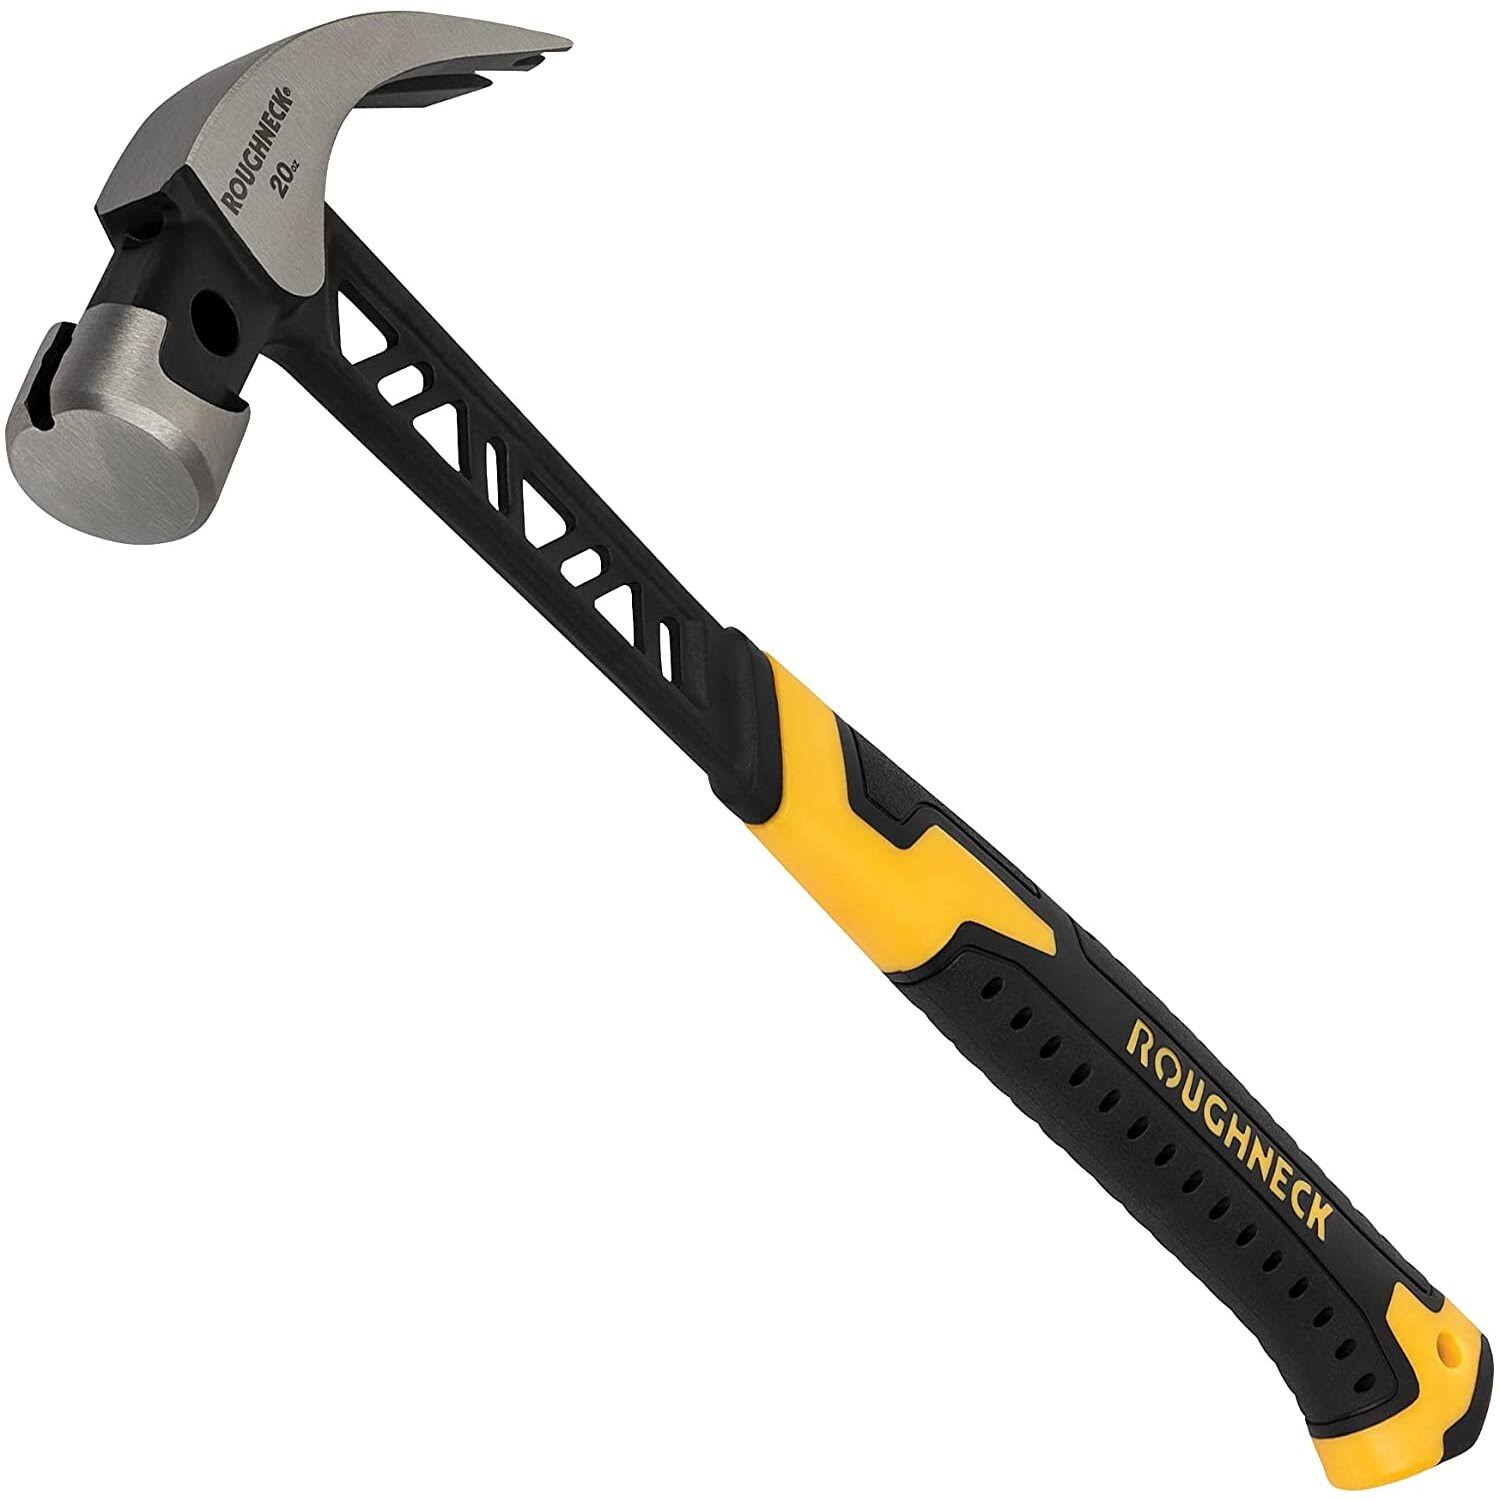 Roughneck - Gorilla V-Series Claw Hammer 567g (20oz)